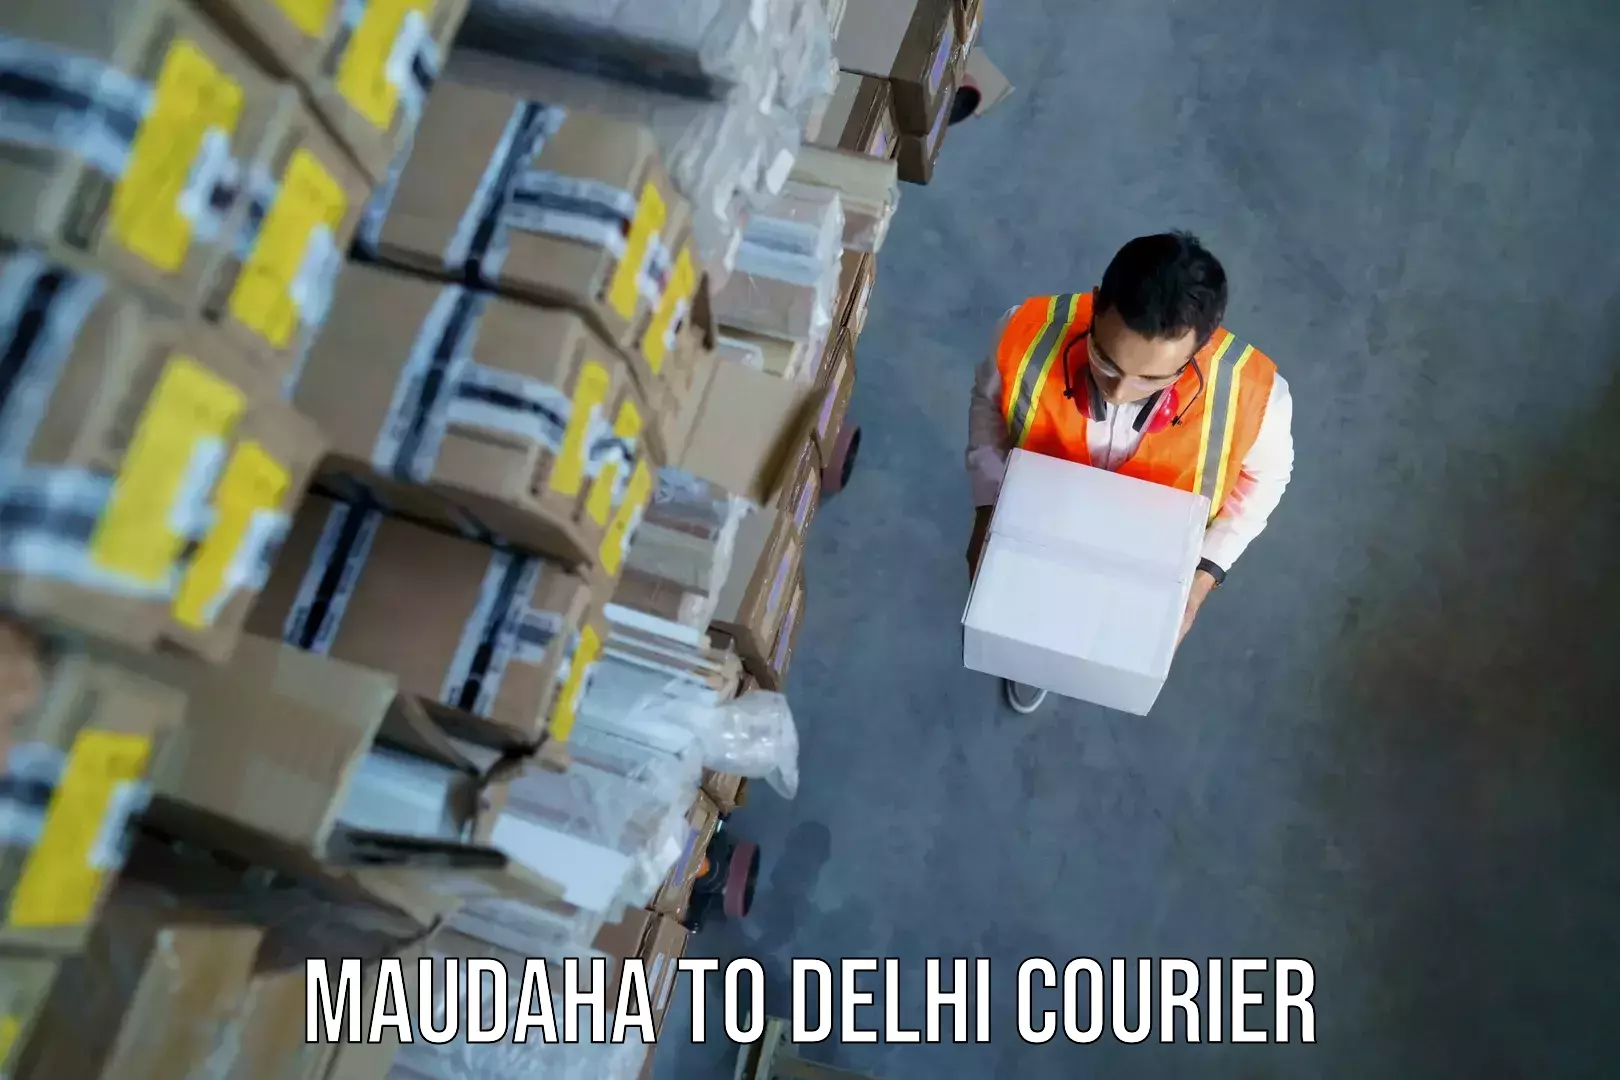 Electronic items luggage shipping Maudaha to Kalkaji